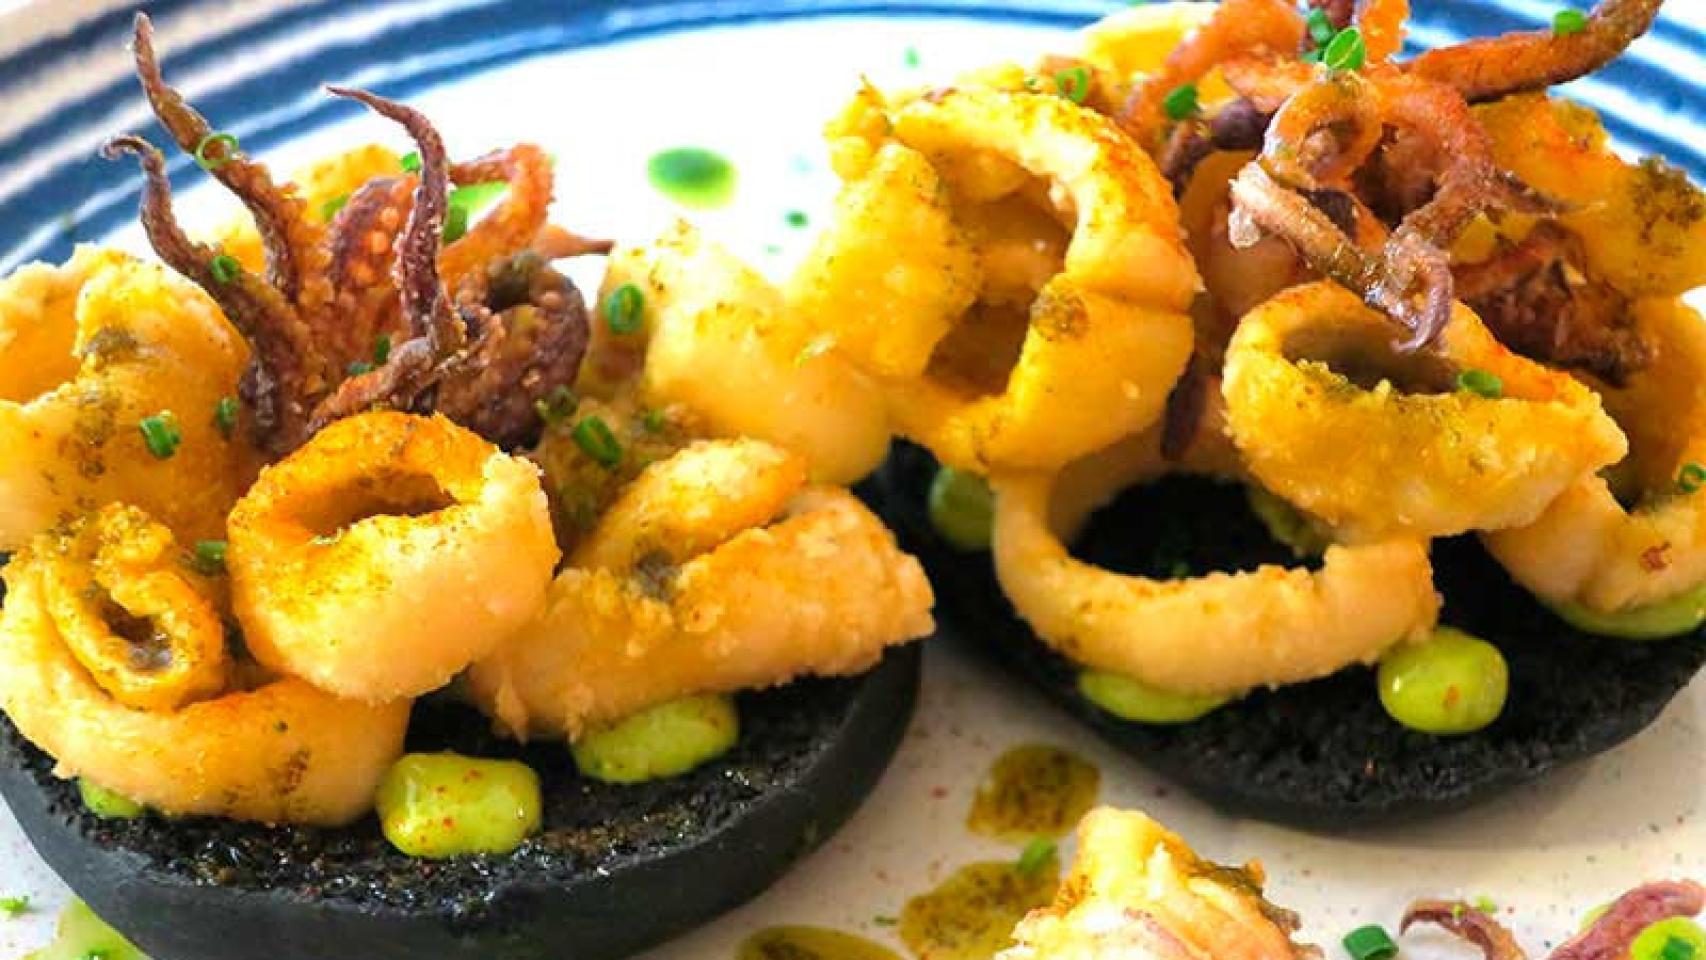 Un plato de calamares fritos del restaurante La Nacional.